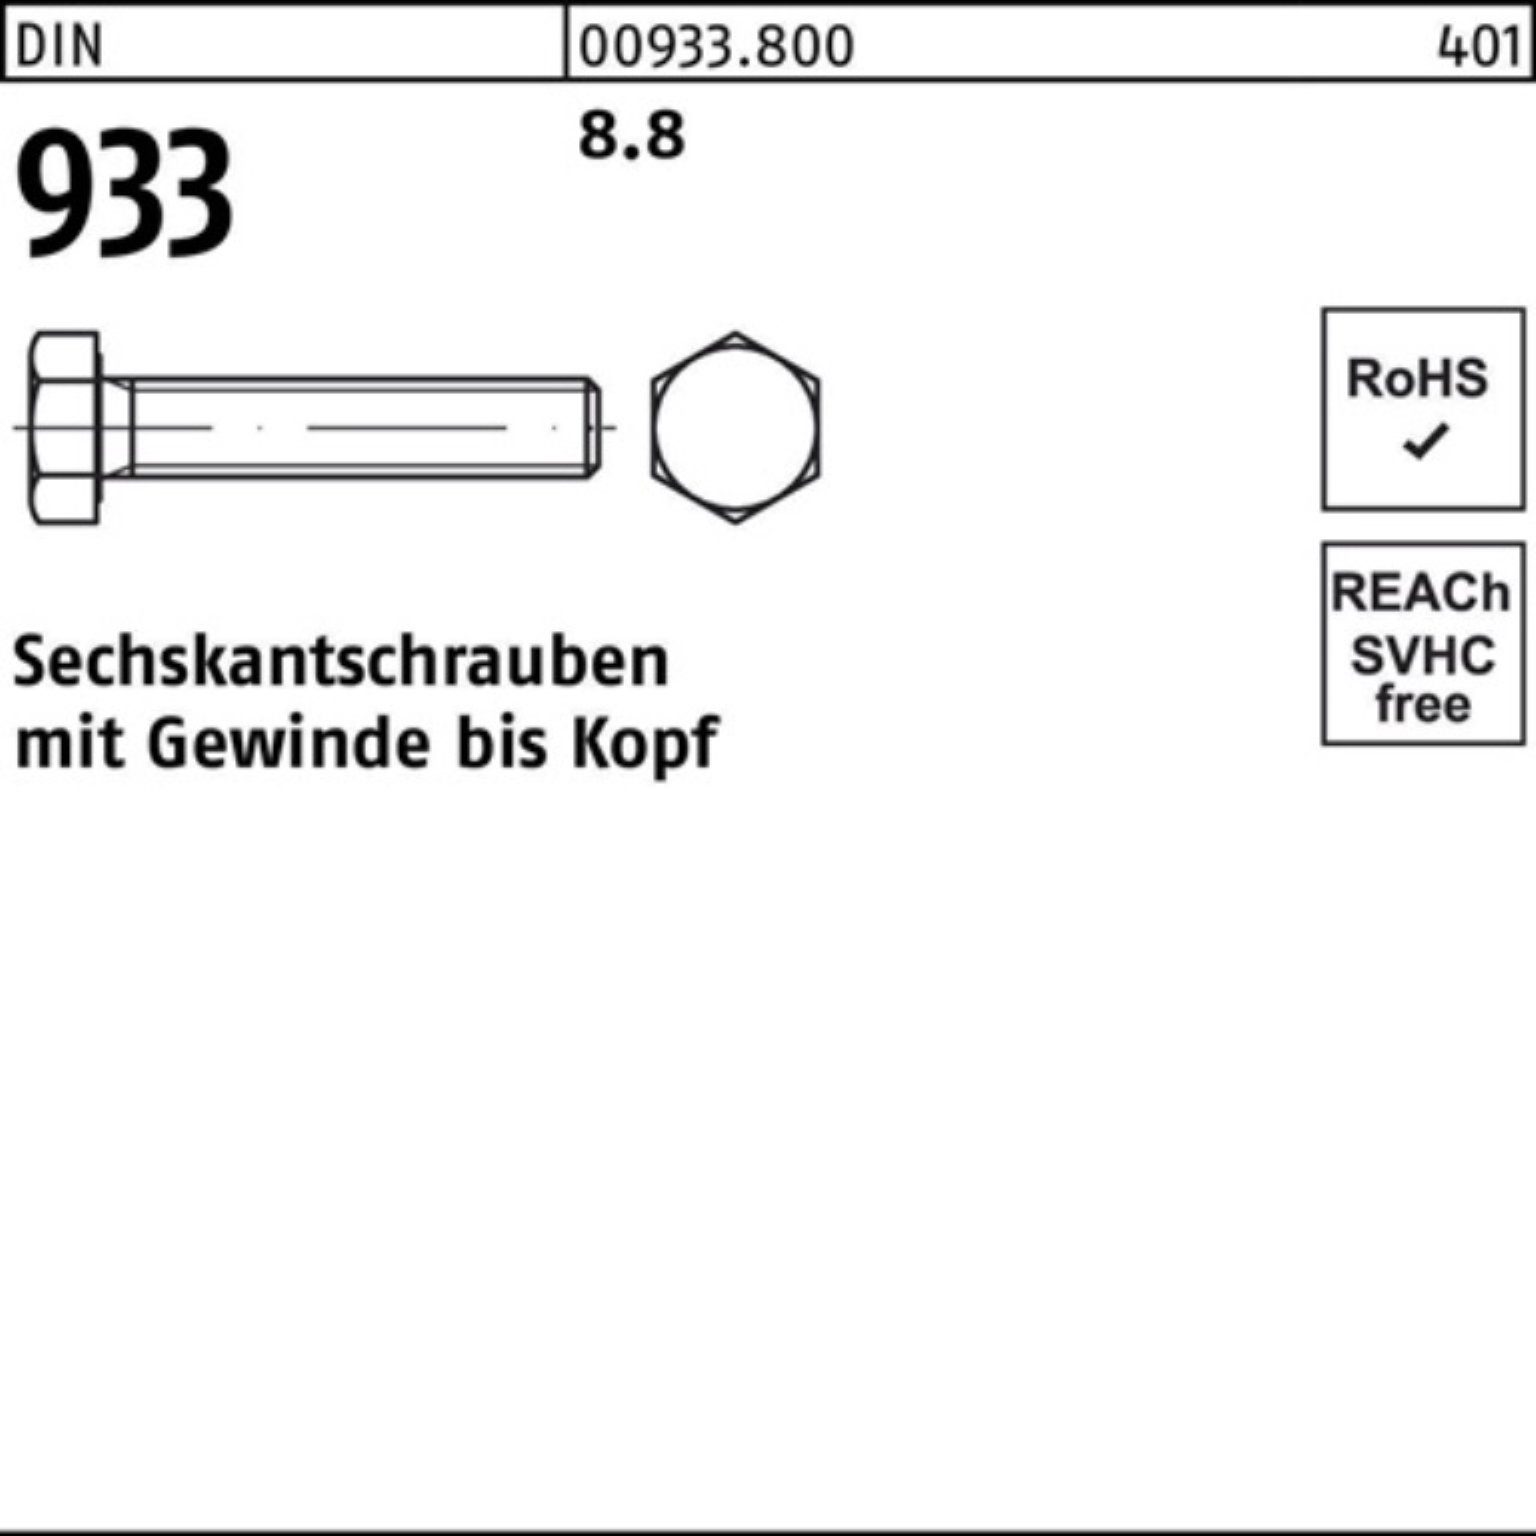 Reyher Sechskantschraube 100er Stück VG Sechskantschraube DIN M36x 933 60 DIN 1 8 933 8.8 Pack